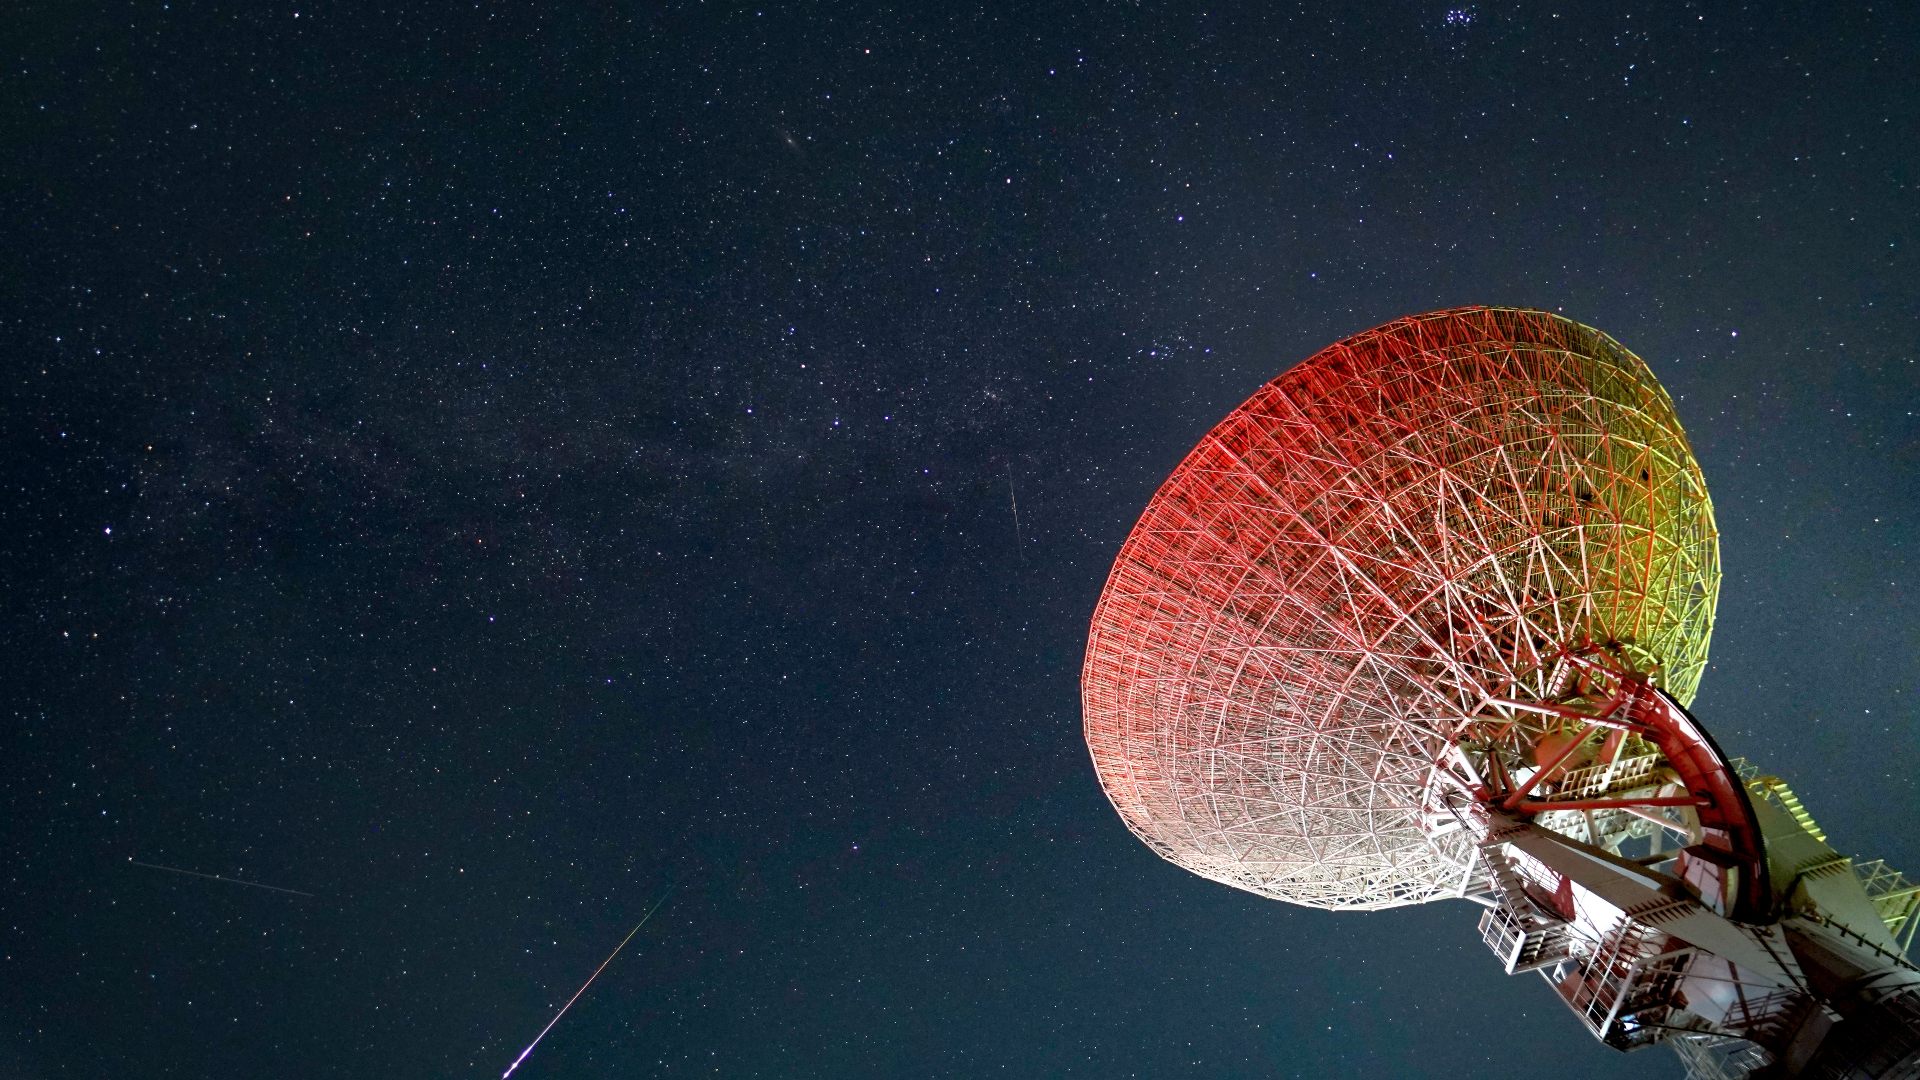 Meteoros brilhantes da Prússia cruzam o céu estrelado com o grande prato do telescópio à direita da imagem.